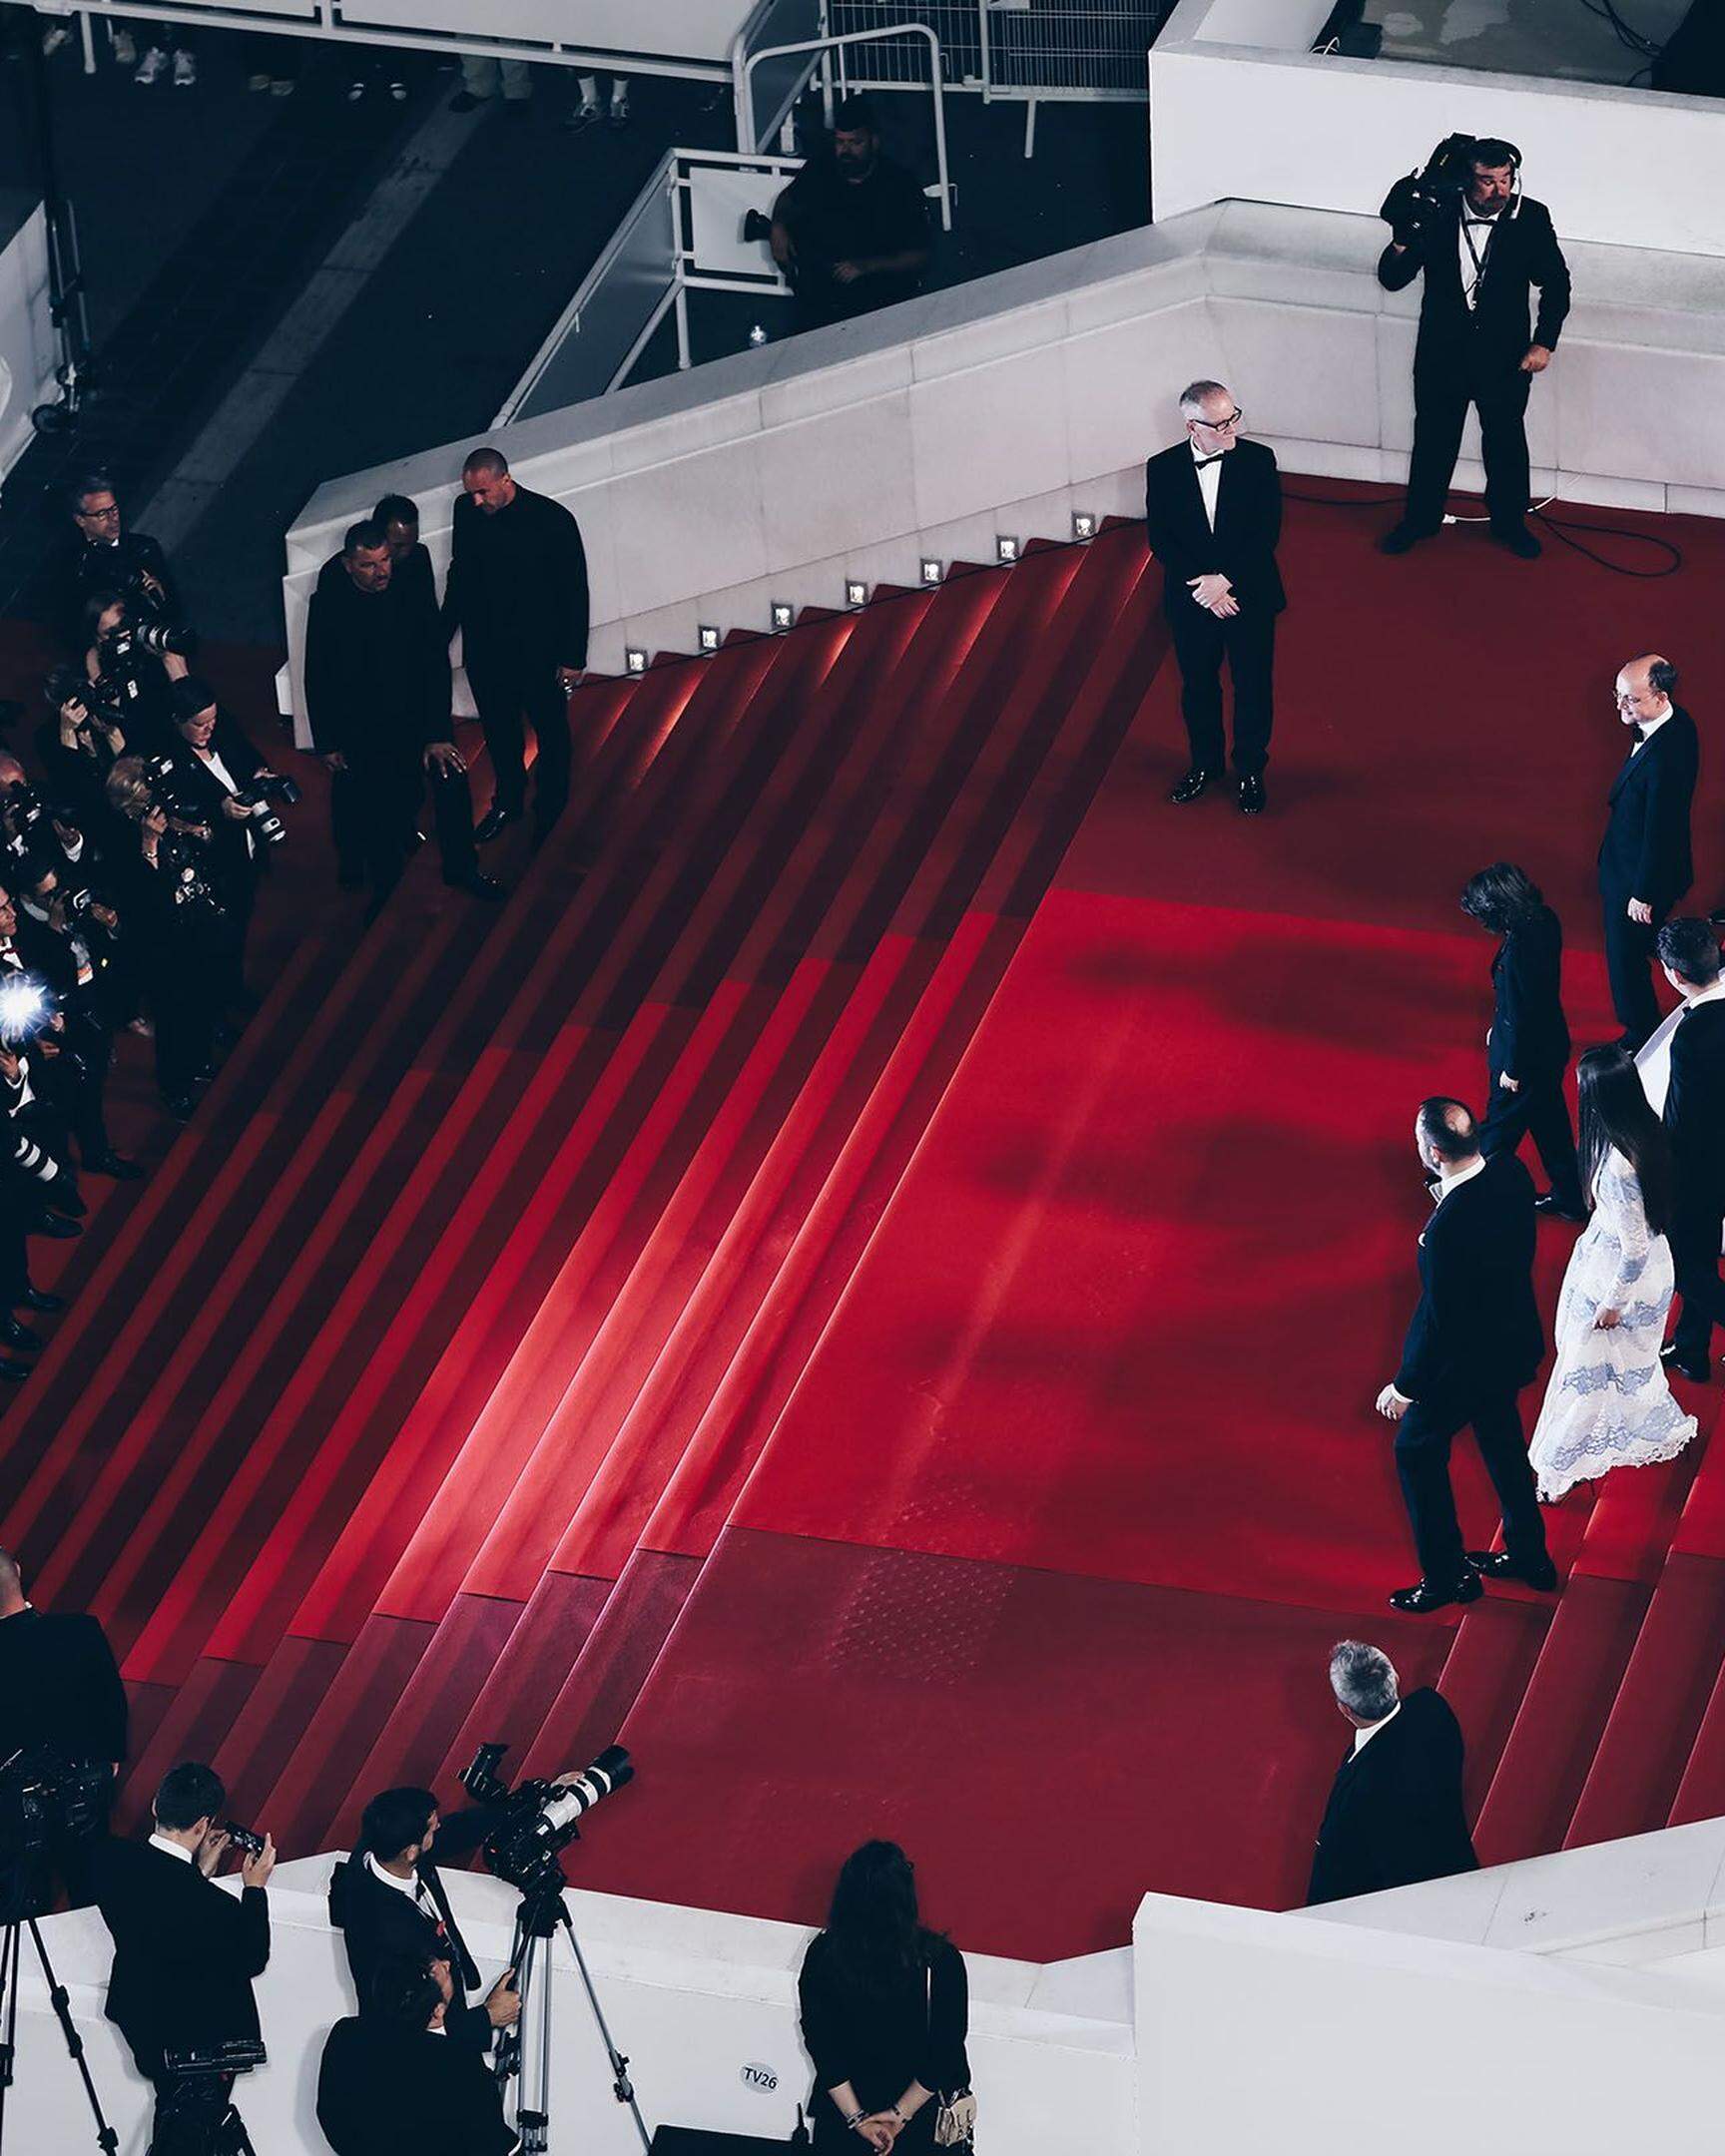 Auf dem Roten Teppich werden auch dieses Jahr wieder jede Menge internationale Weltstars erwartet, darunter: Emma Stone, Kevin Costner, George Miller, Francis Ford Coppola und Cate Blanchett.